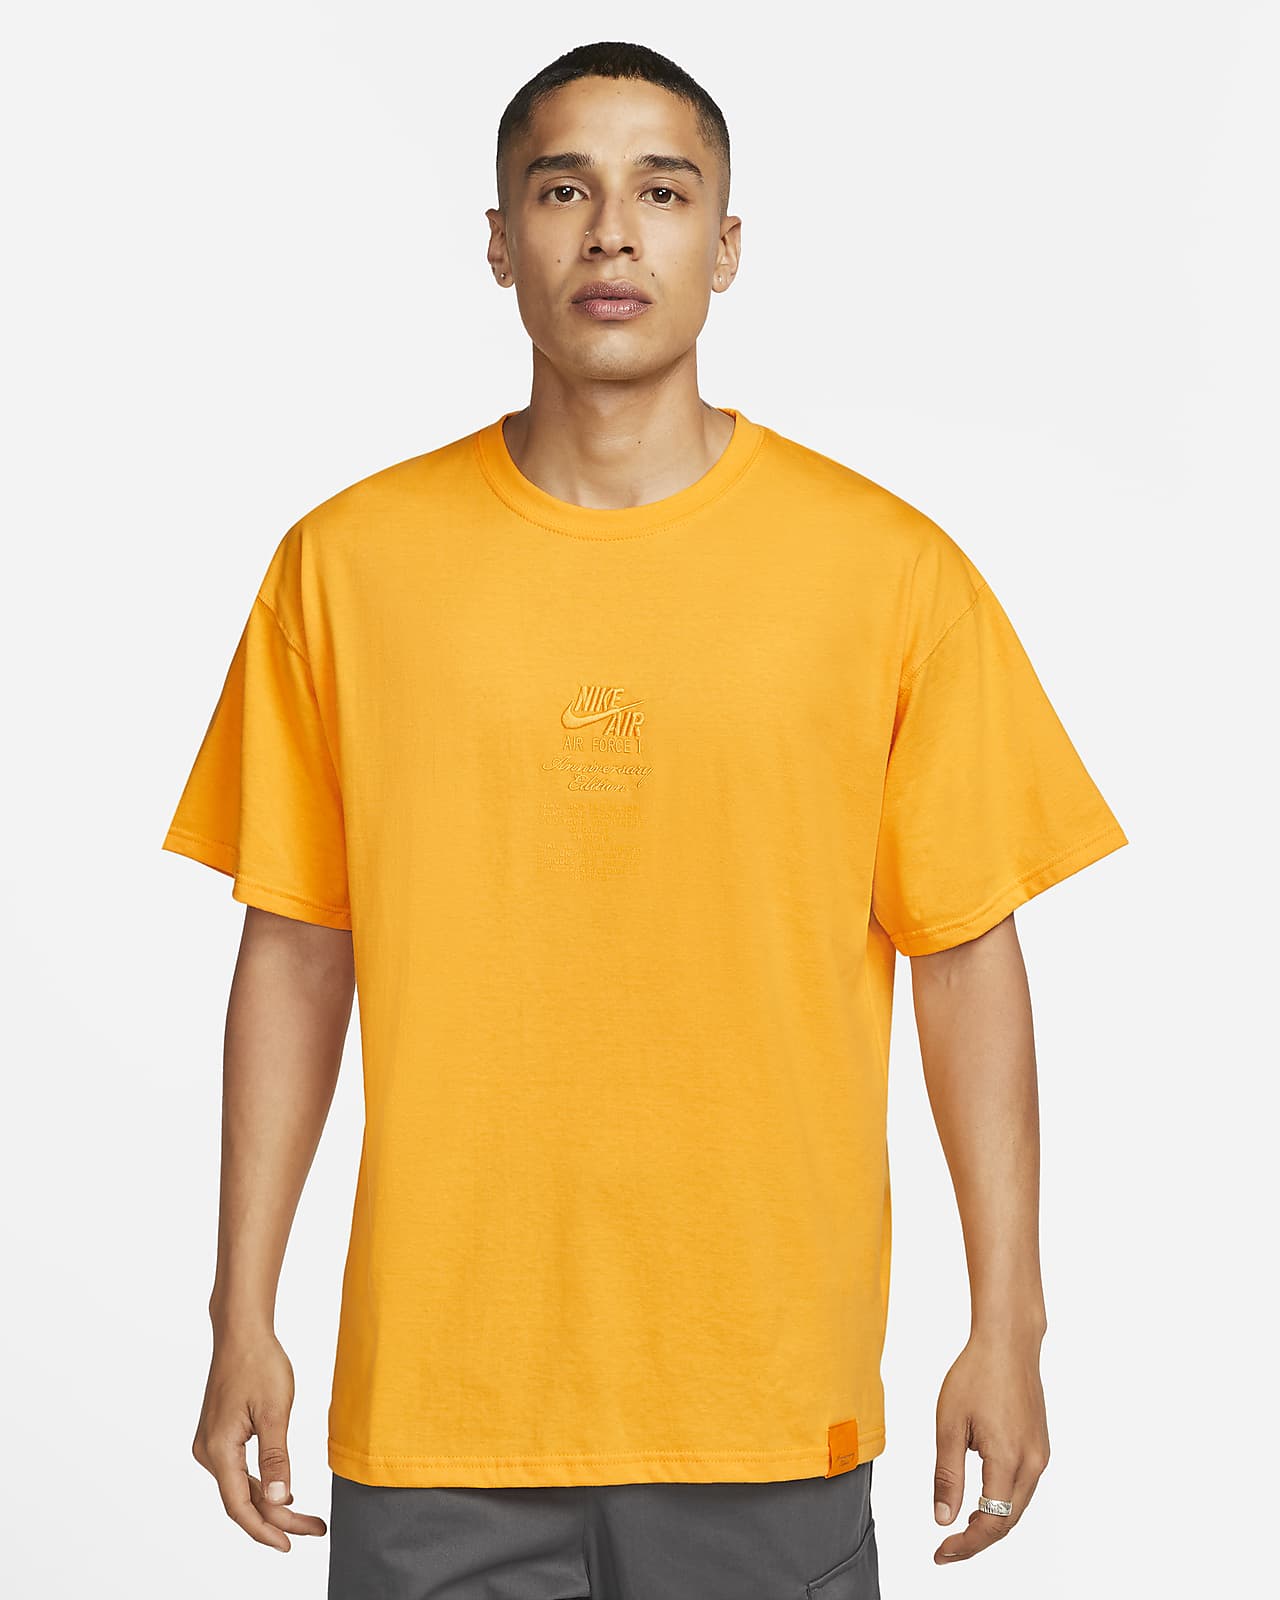 yellow tee shirt